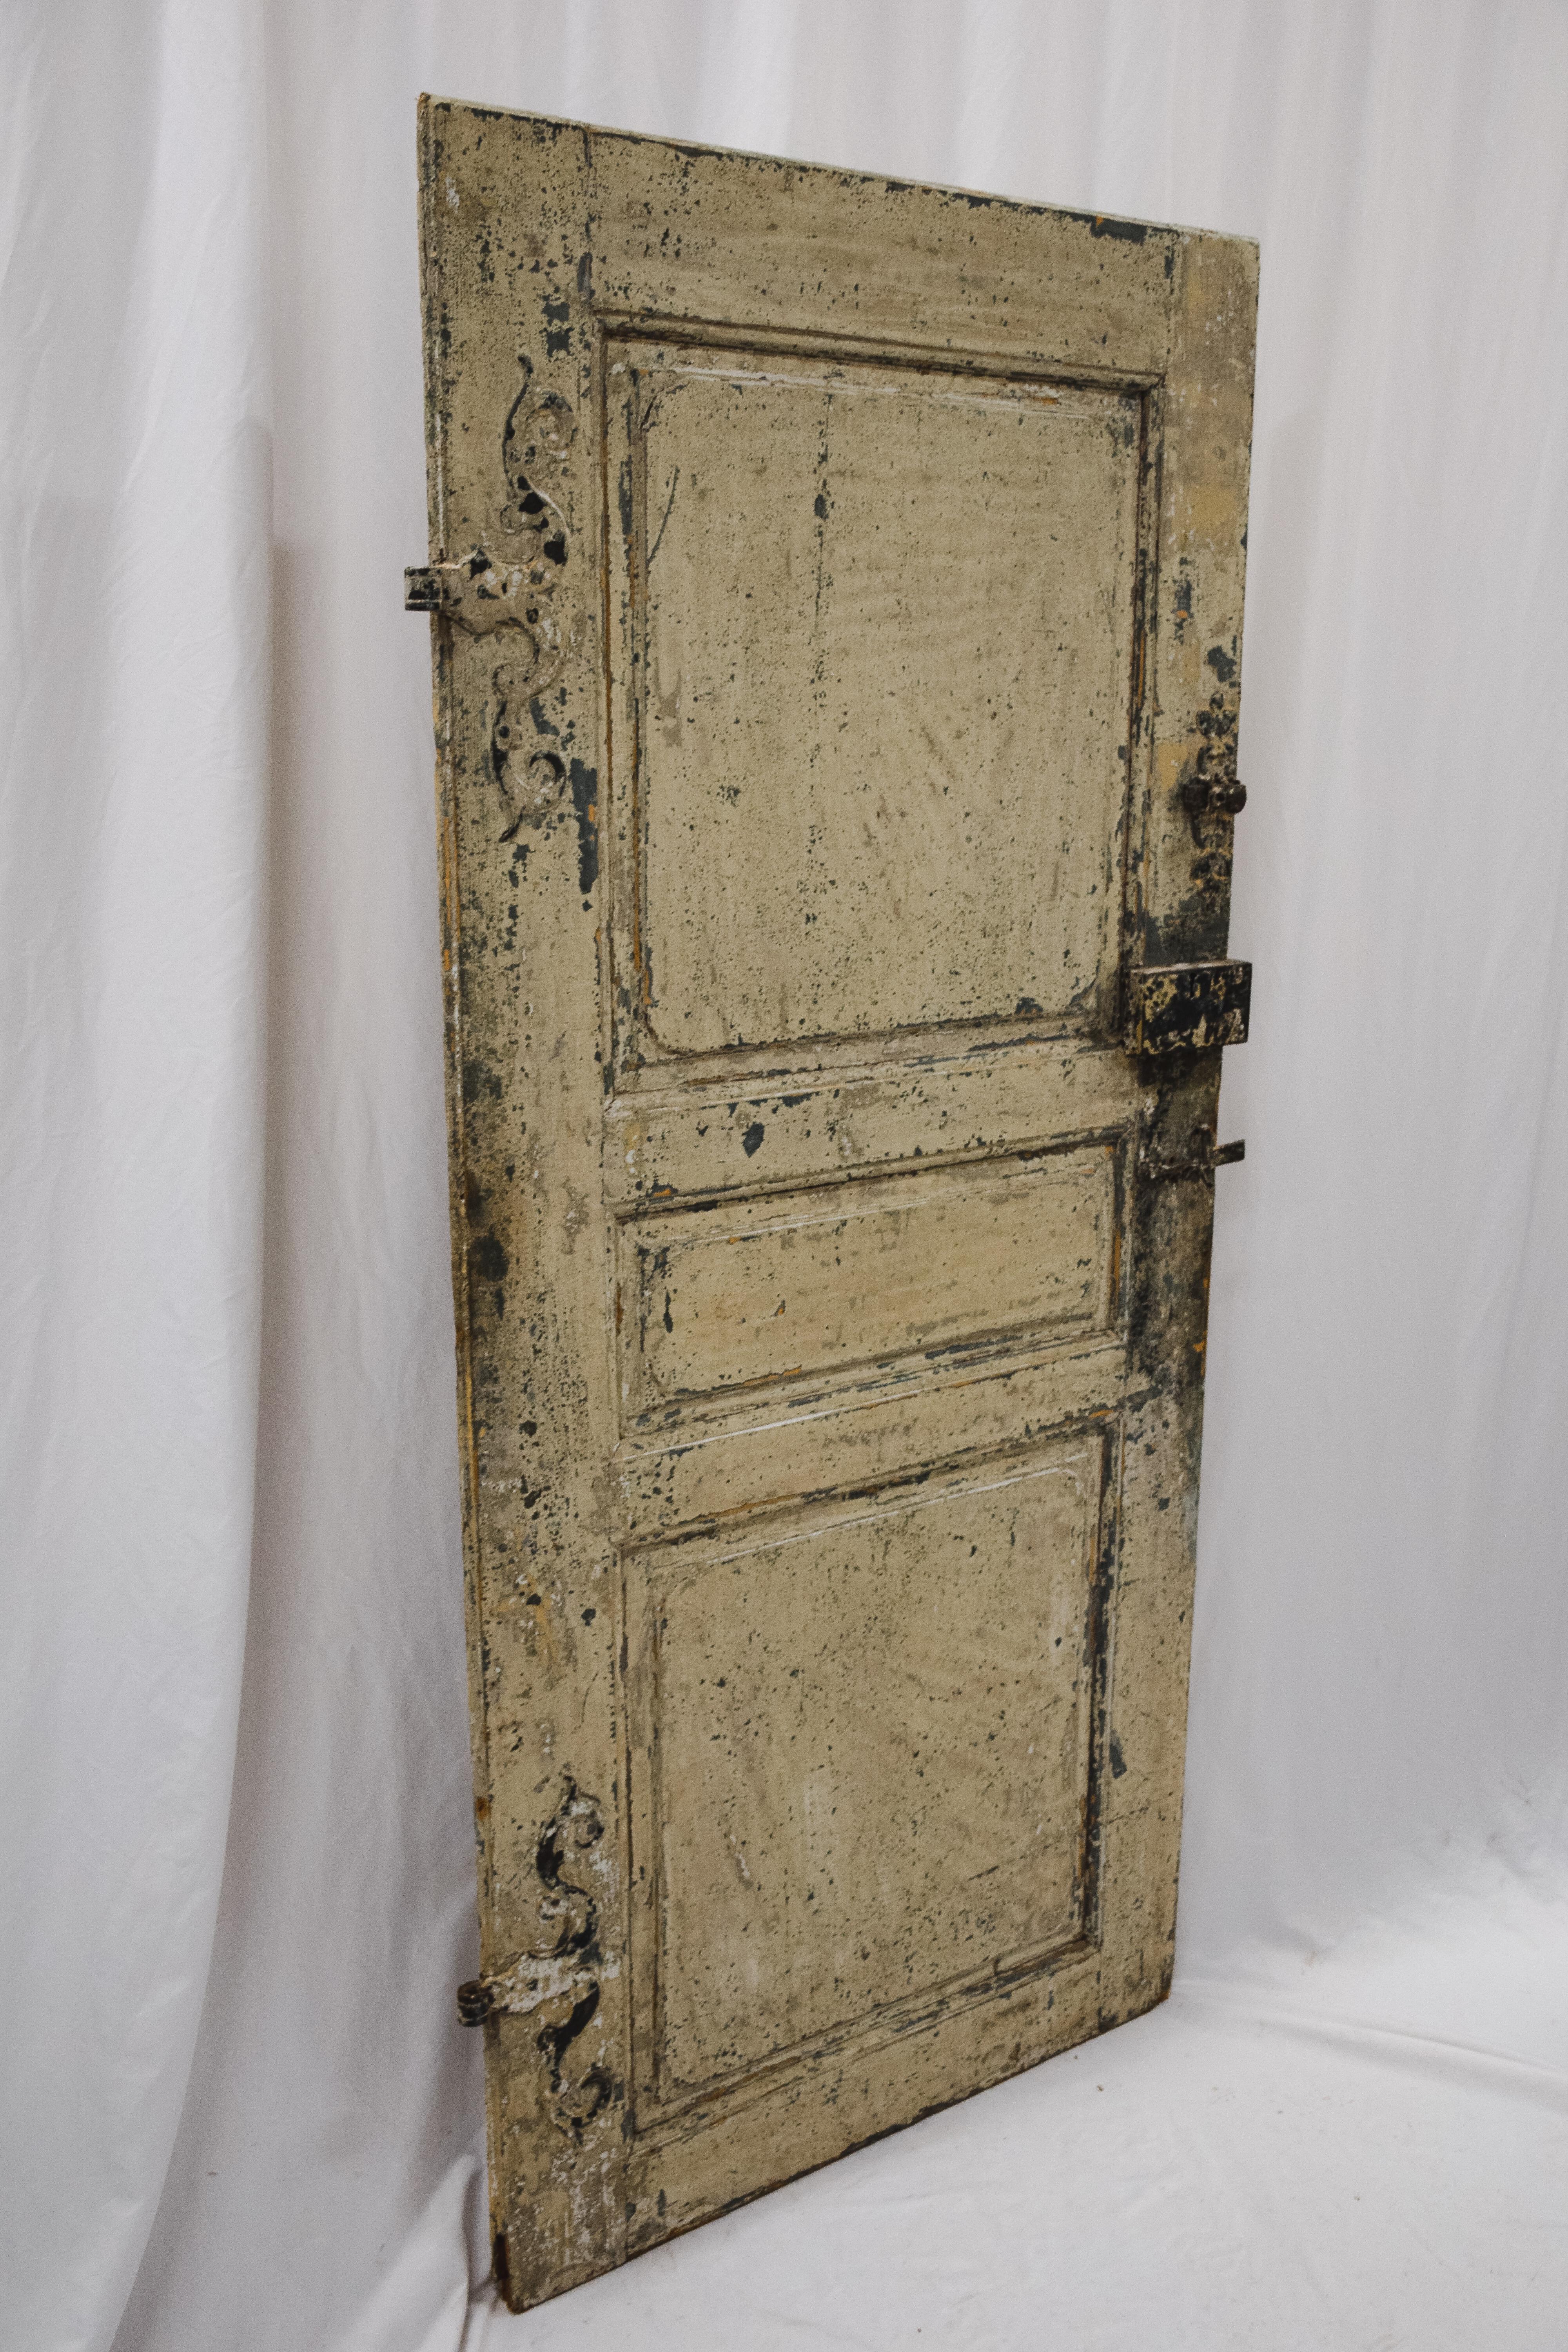 Schöne antike französische bemalte Tür aus den 1800er Jahren, die aus Frankreich stammt. Es ist mit detaillierten Eisenbeschlägen verziert und ist voll funktionsfähig mit einigen allgemeinen Verschleiß an Holz und Farbe. Diese Tür eignet sich